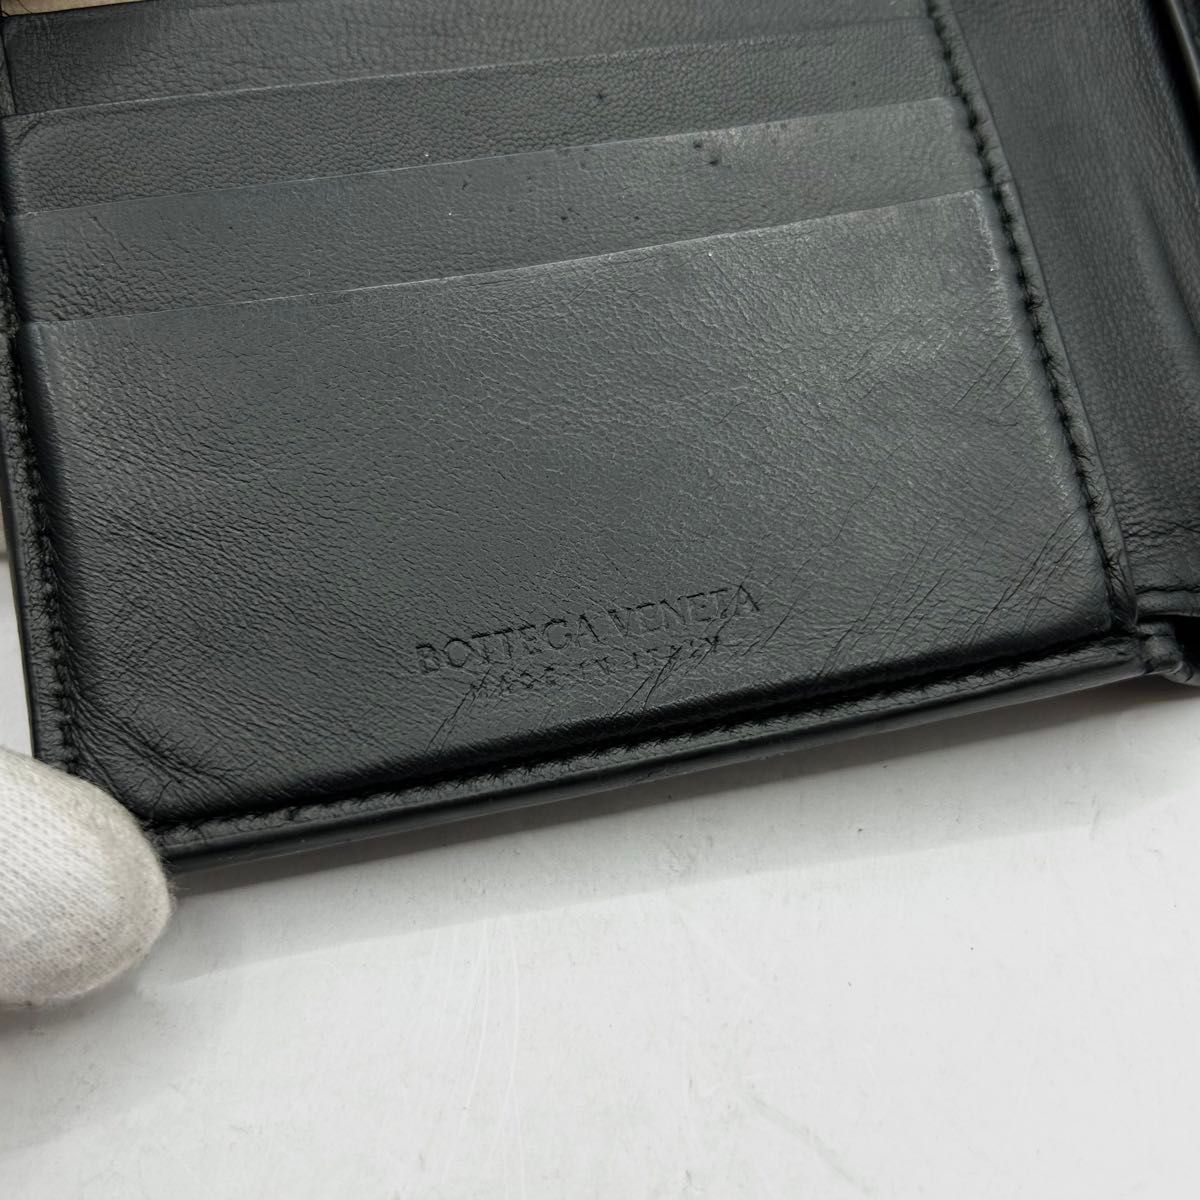 美品 BOTTEGA VENETA ボッテガヴェネタ 二つ折り財布 ウォレット マキシイントレチャート レザー 黒 ブラック